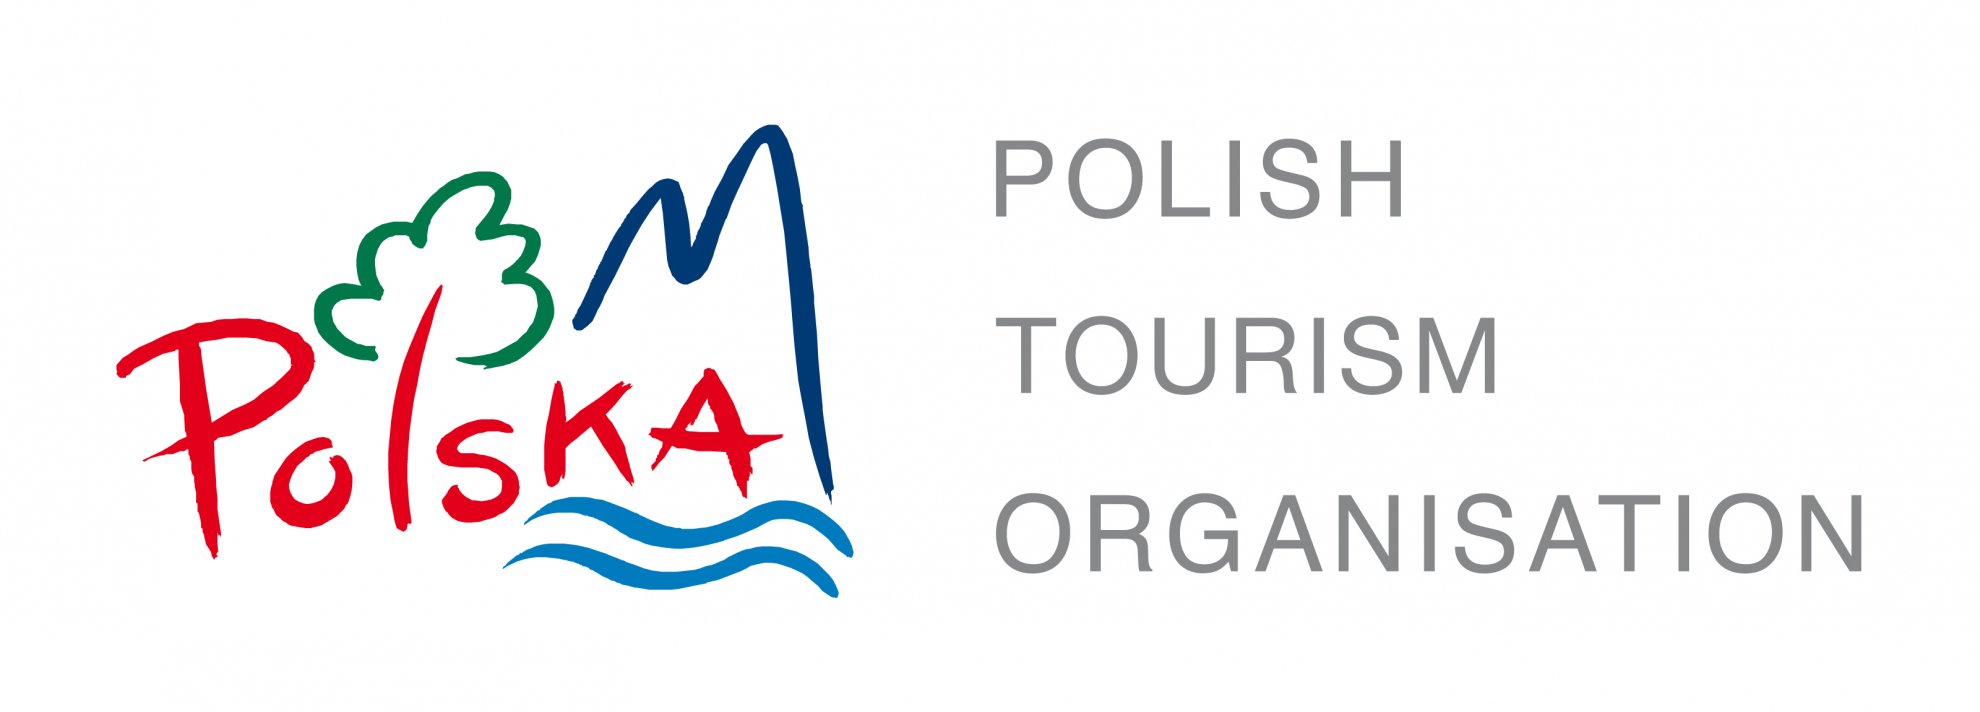 www.polonia.travel